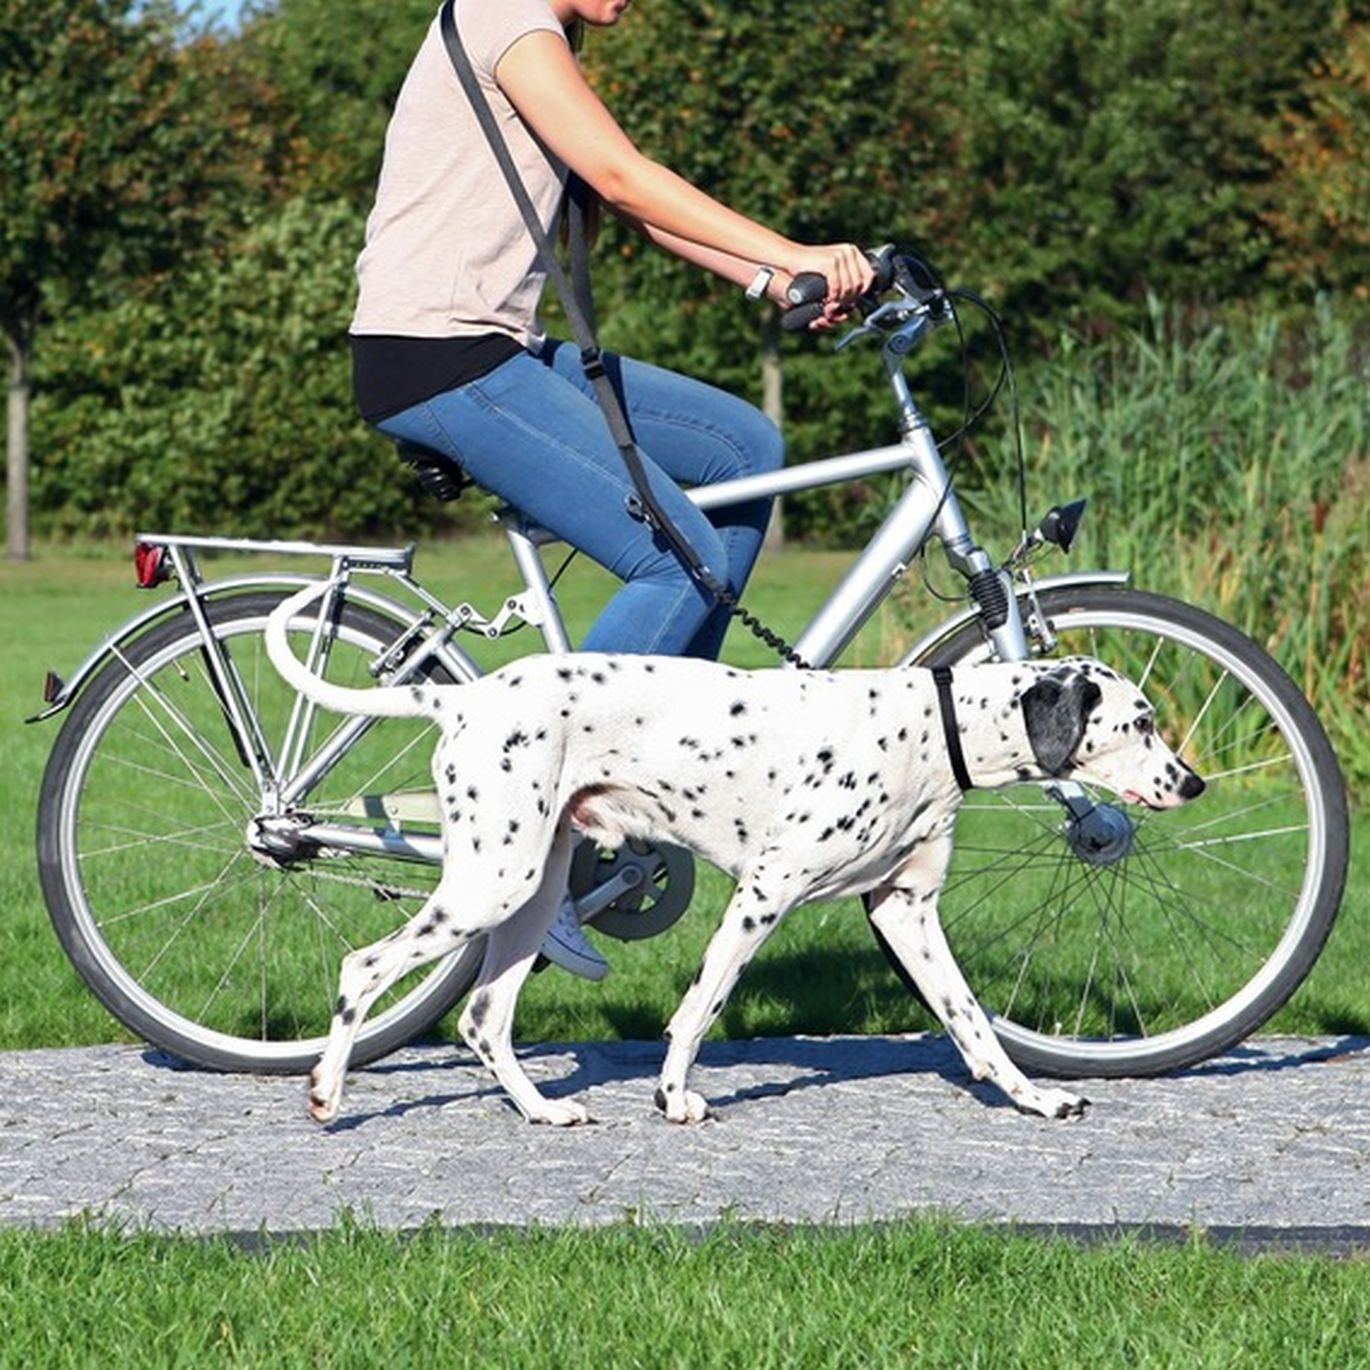 Šuo vaikšto su važiuojančiu dviračiu šeiminku